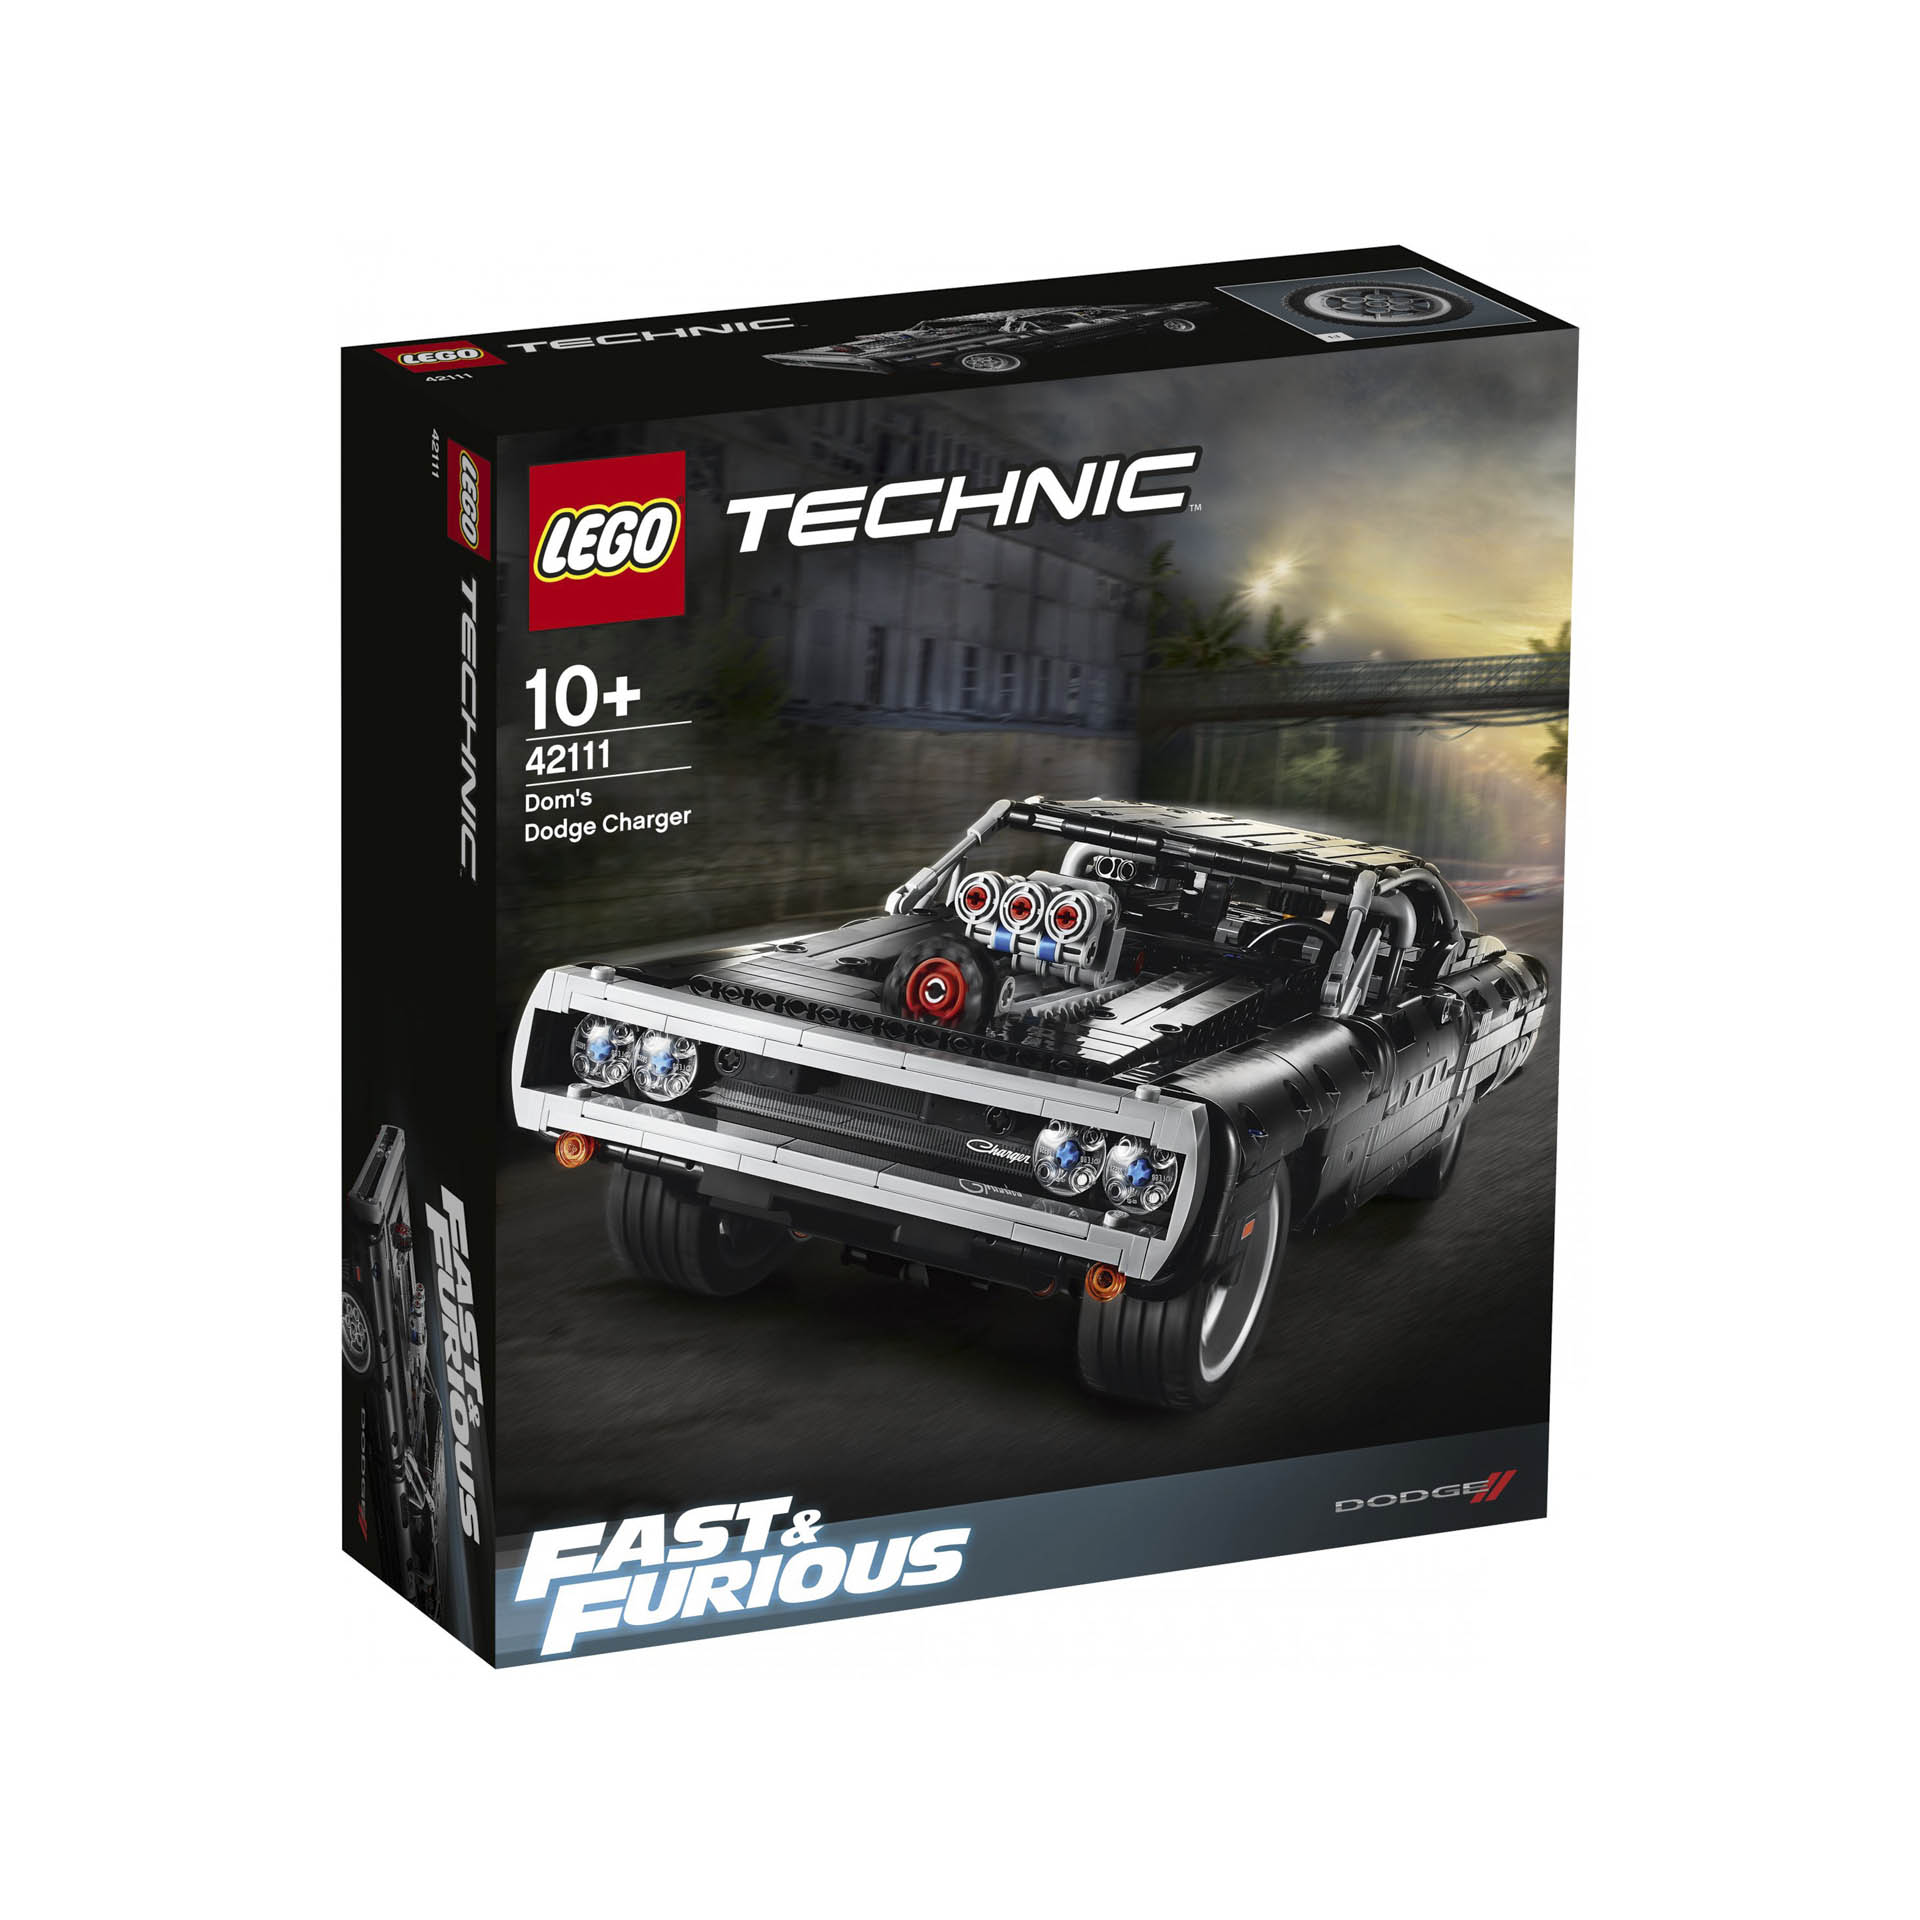 LEGO Technic Dom's Dodge Charger, Modellini Macchine da Corsa Fast & Furious, I 42111, , large